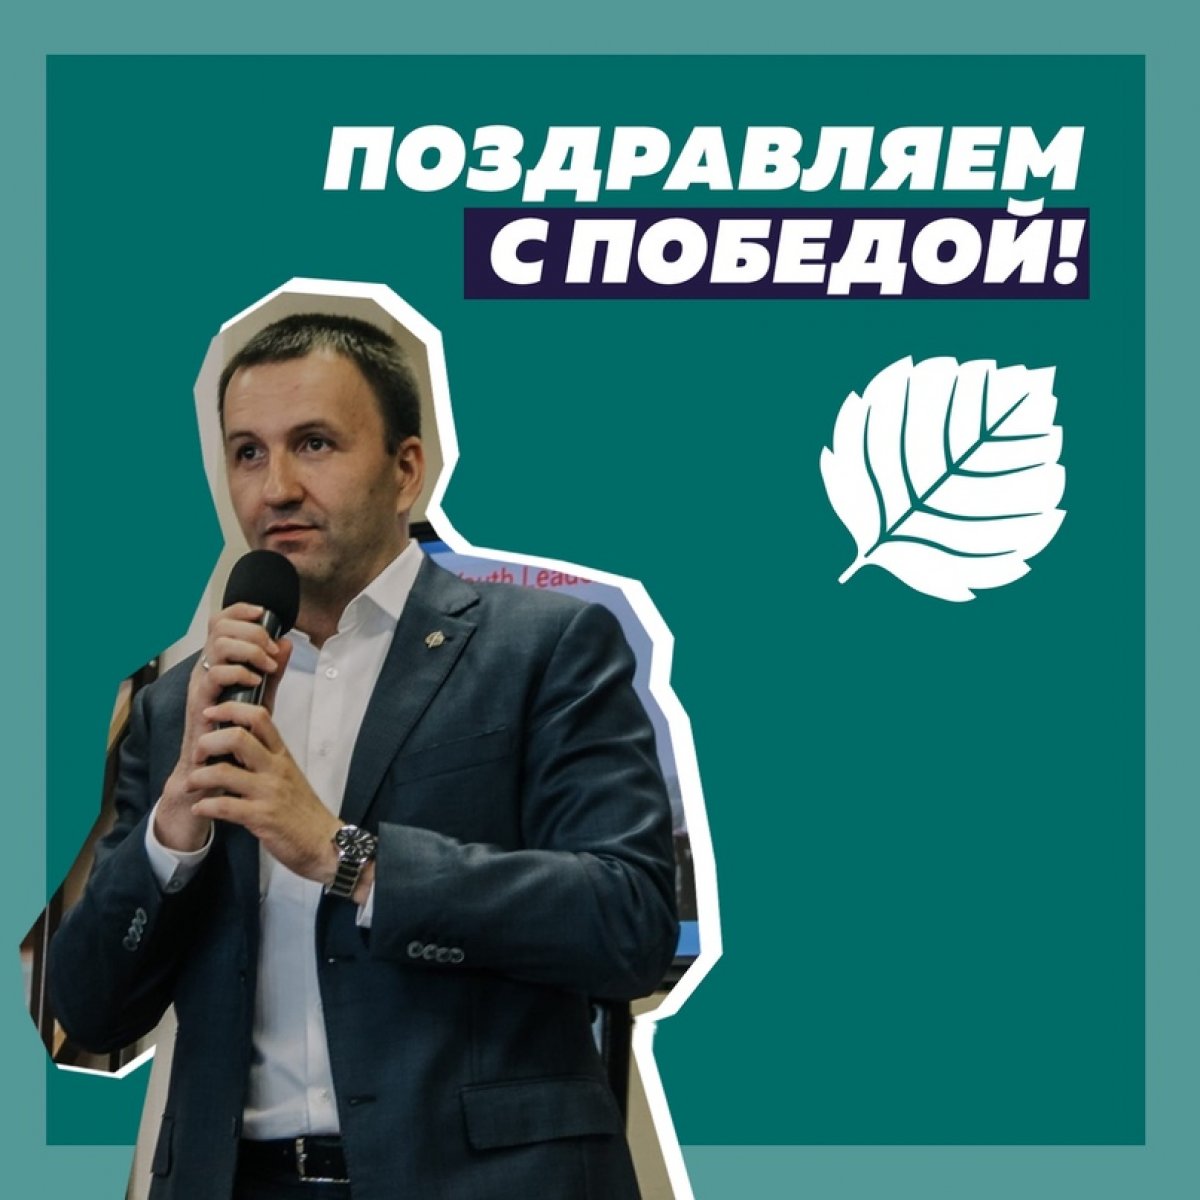 Почётный профессор УлГУ Павел Красноруцкий переизбран на пост председателя РСМ!